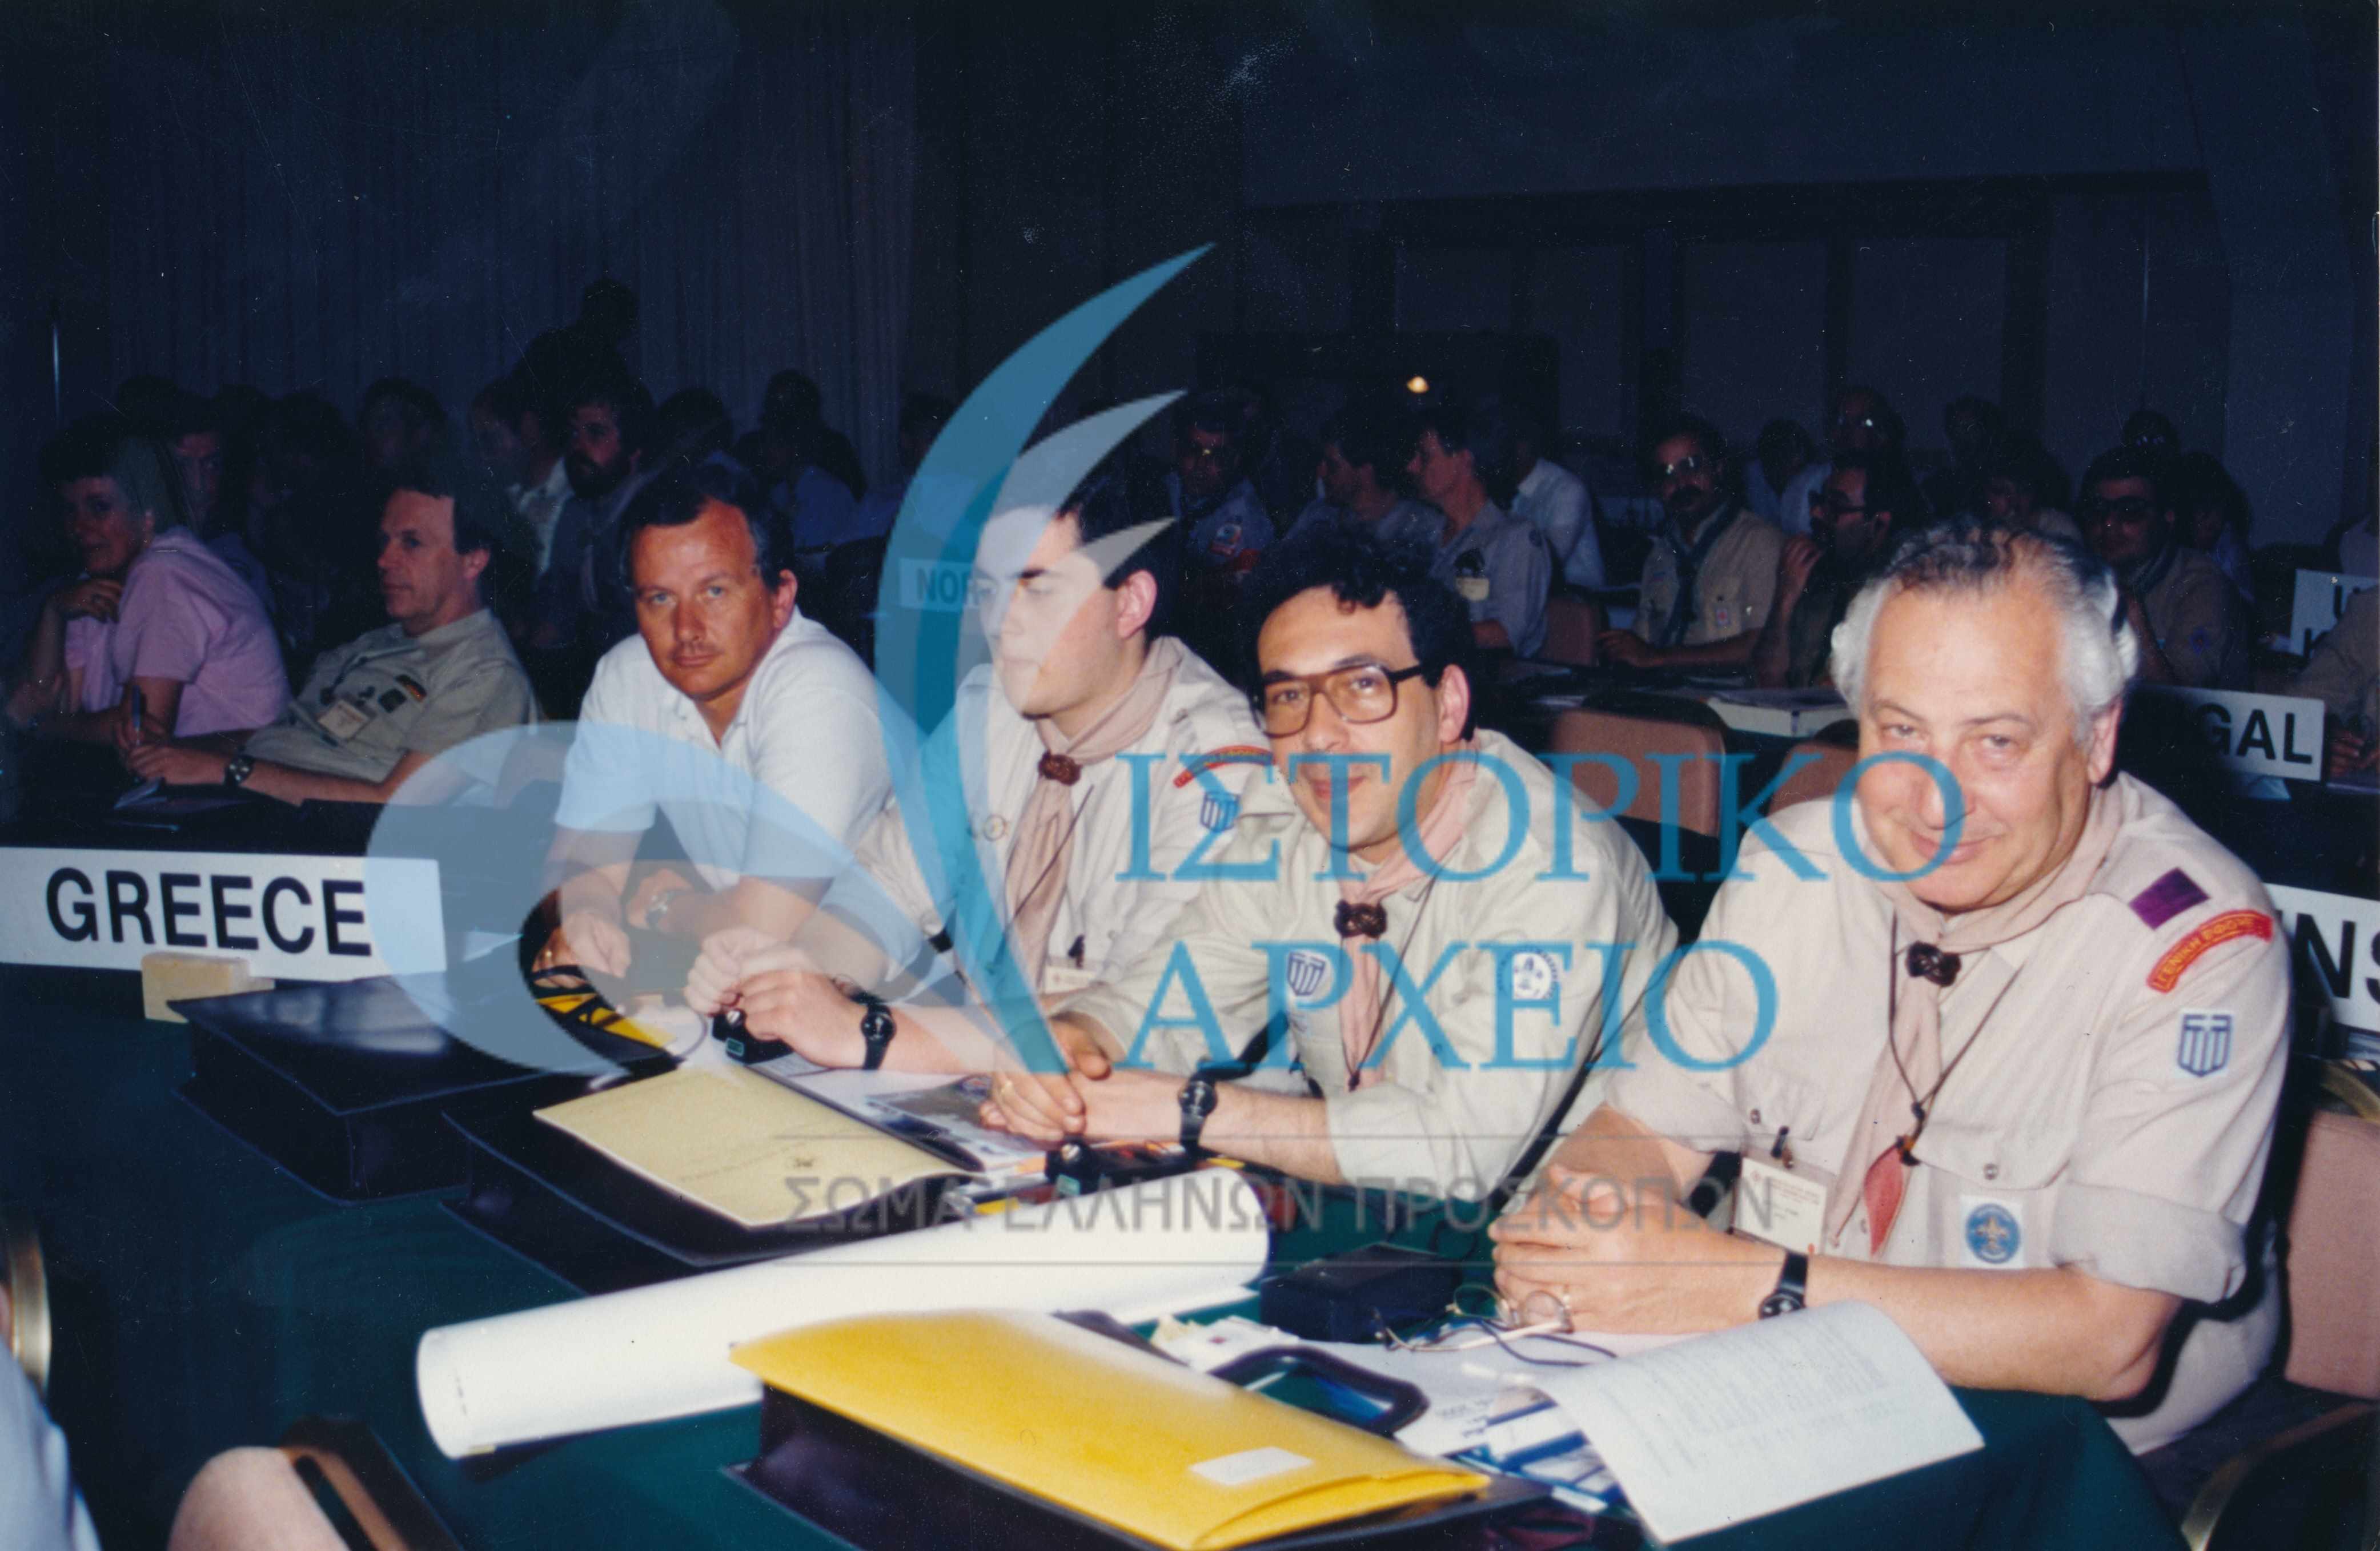 Η ελληνική αντιπροσωπεία στο 6ο Ευρωπαϊκό Συνέδριο Προσκόπων και Οδηγών στην Λάρνακα της Κύπρου το 1989. Διακρίνονται οι: Κ. Τσαντίλης, Ματ. Ζήκος